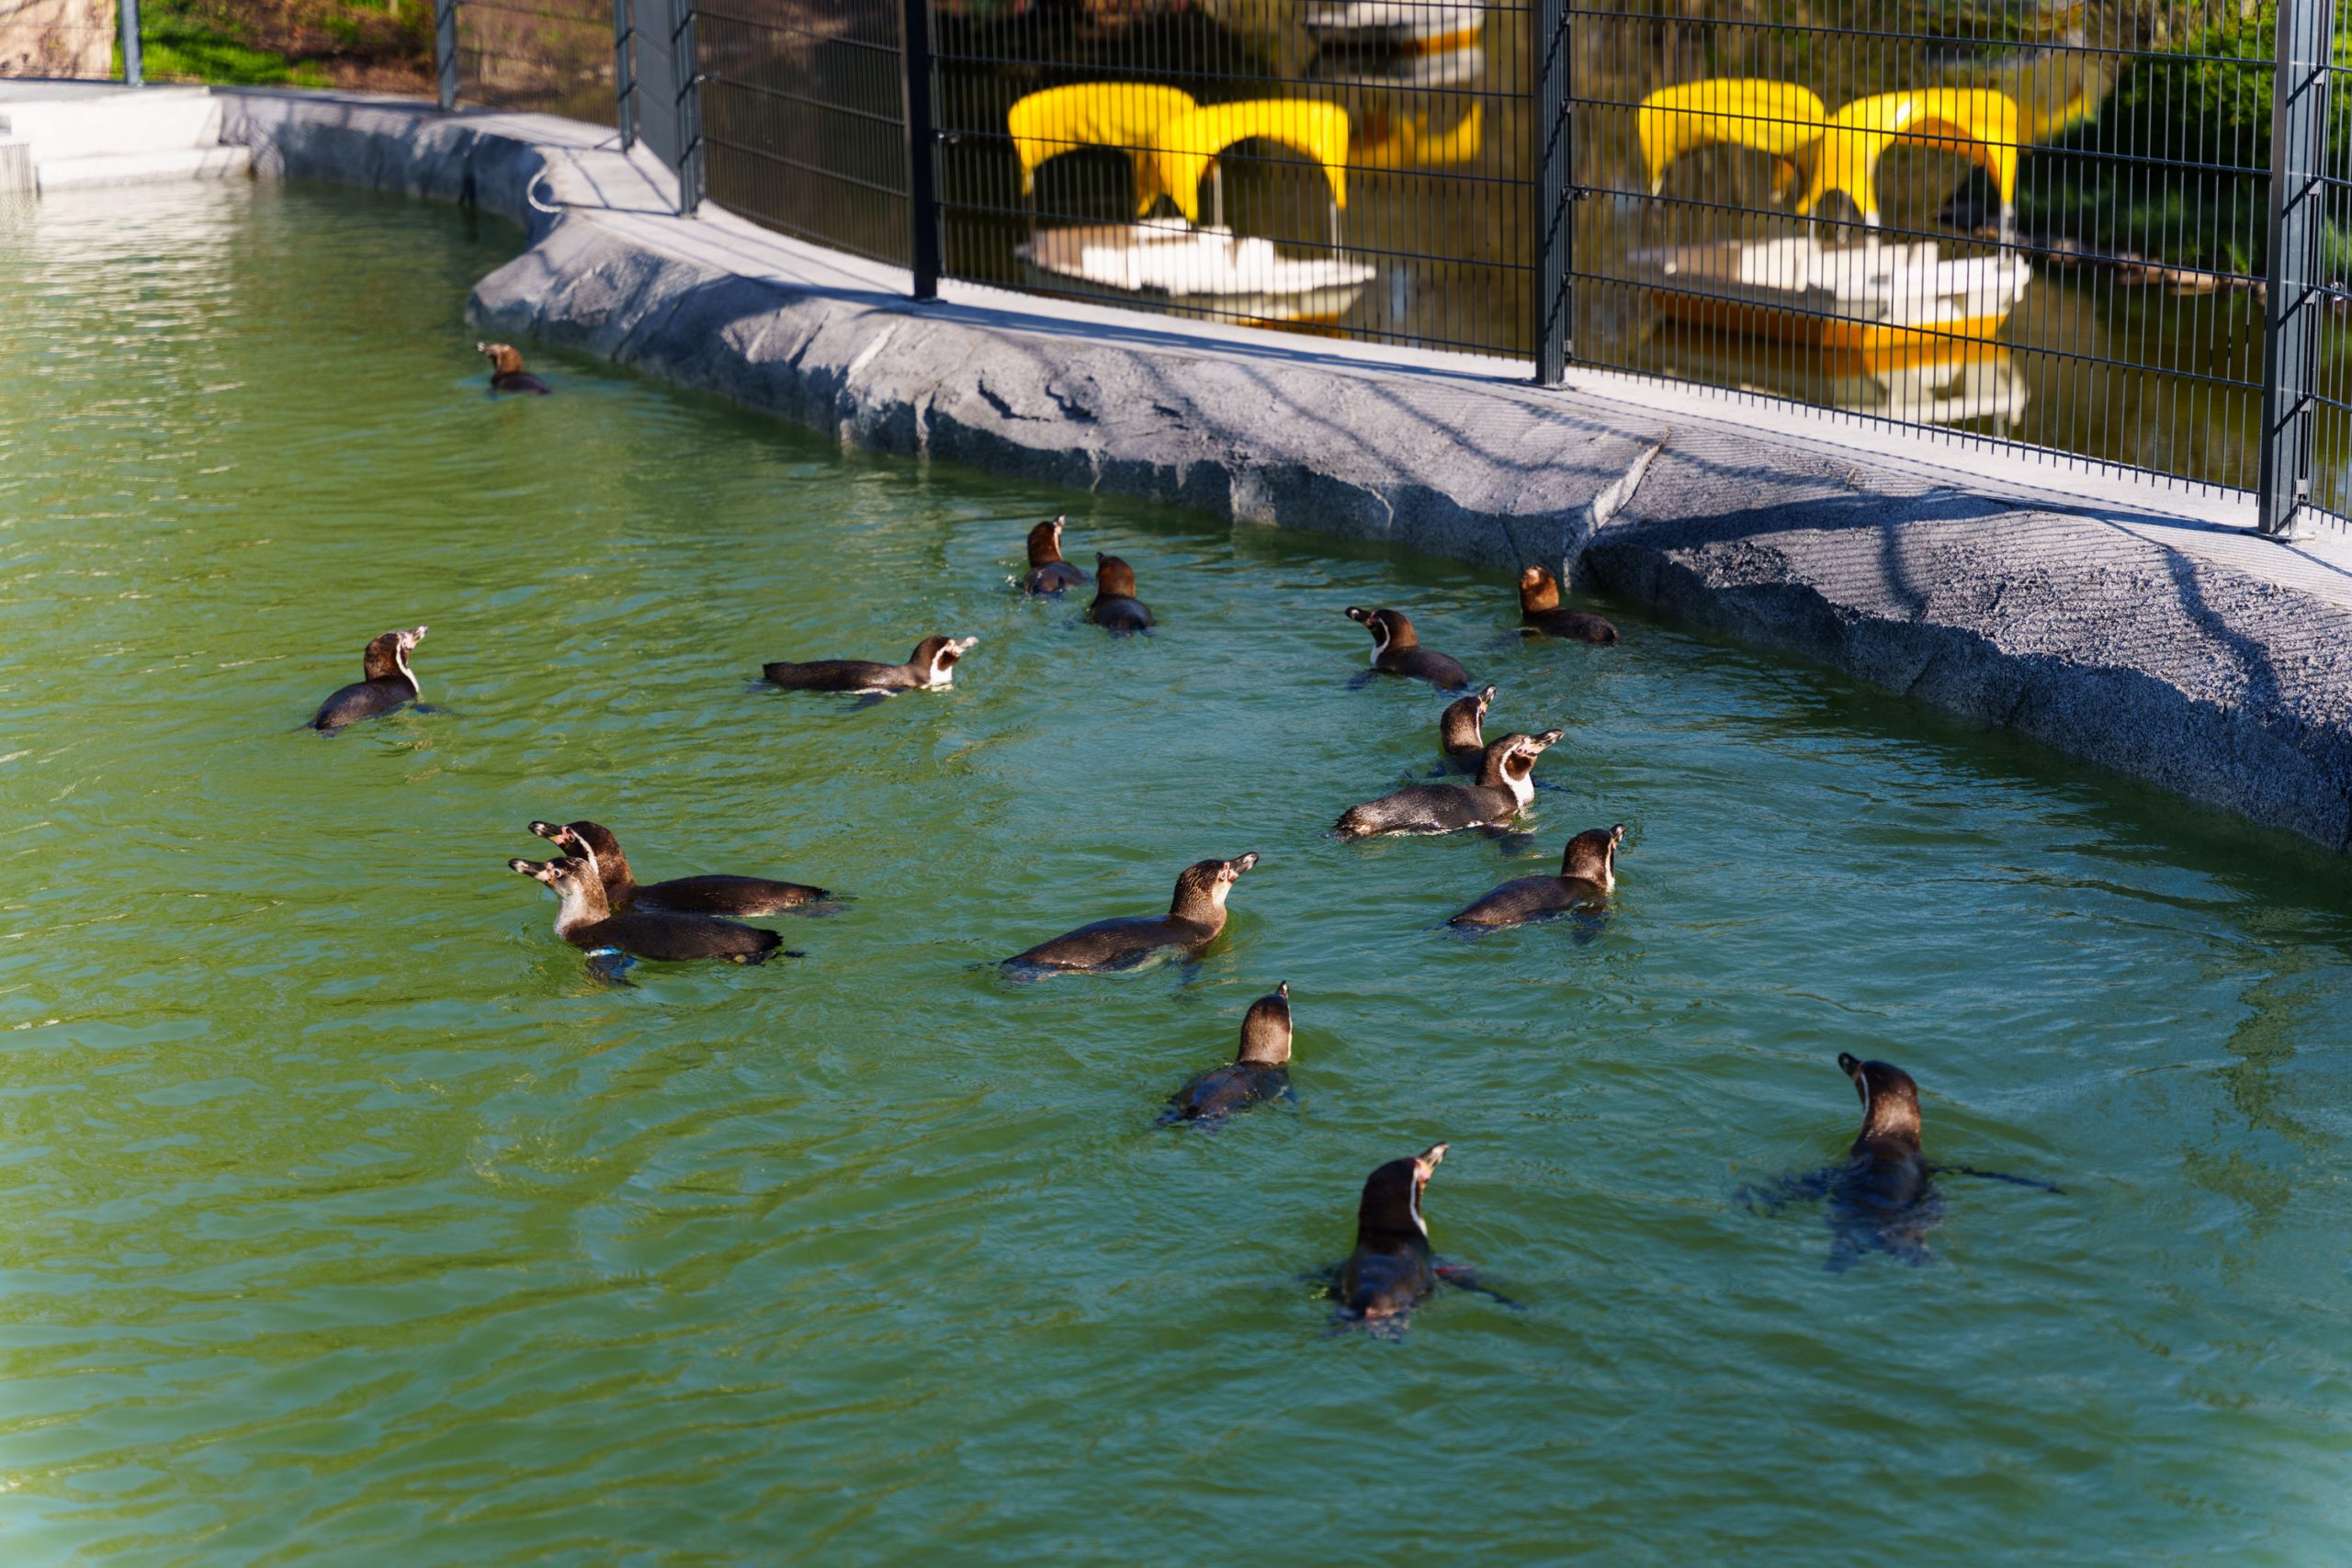 eine Gruppe von Humboldtpinguinen genießt ein Bad in grünlichem Wasser. Im Hintergrund die Charakteristischen Gondolettas des Luisenparks